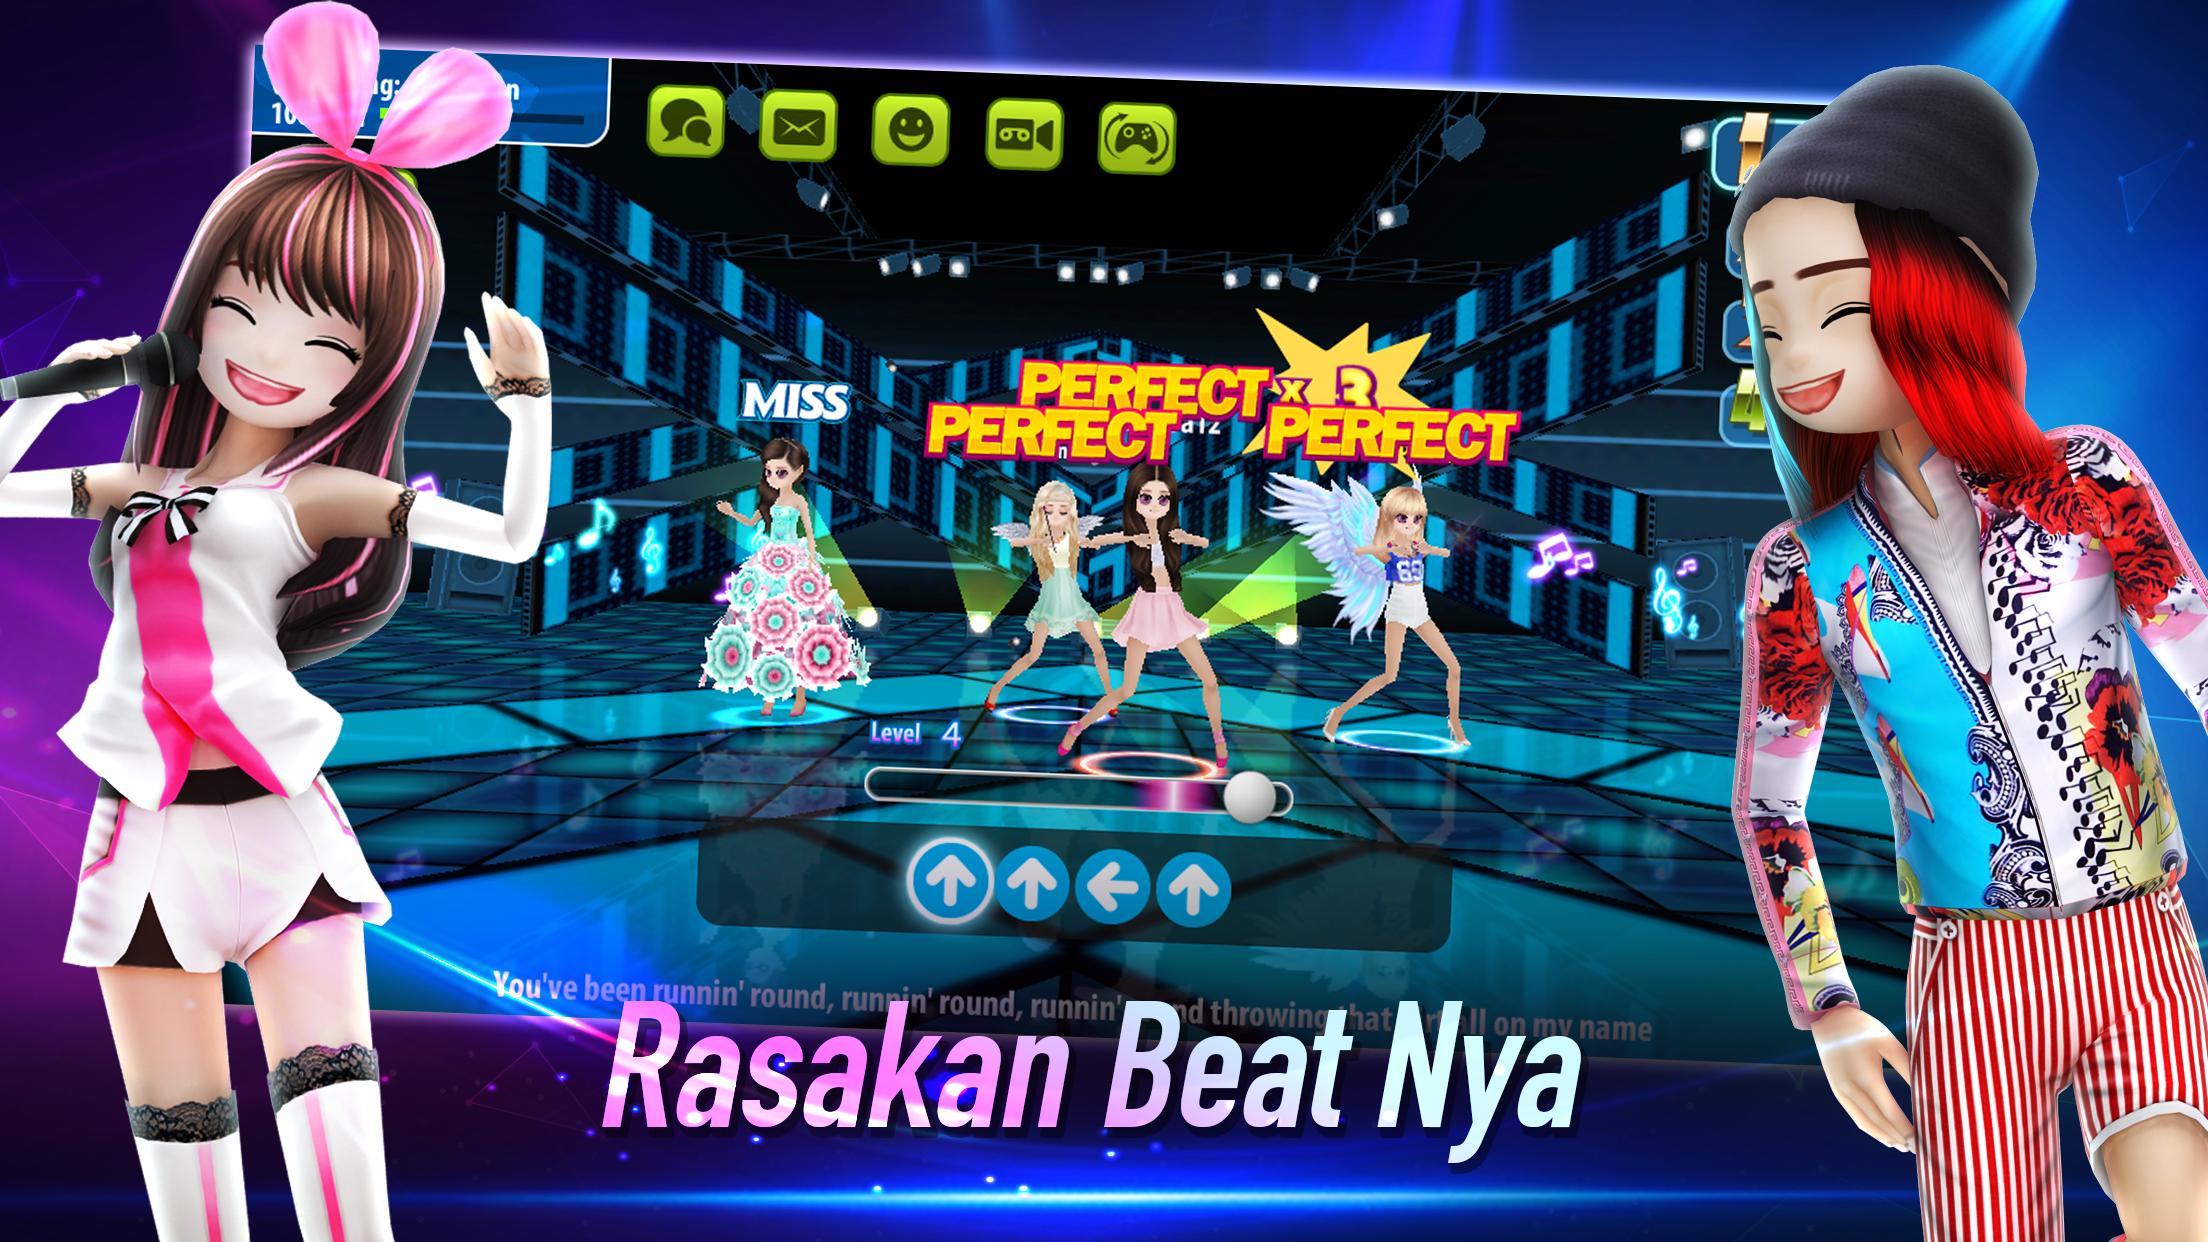 AVATAR MUSIK INDONESIA - Social Dancing Game 1.0.1 Screenshot 18